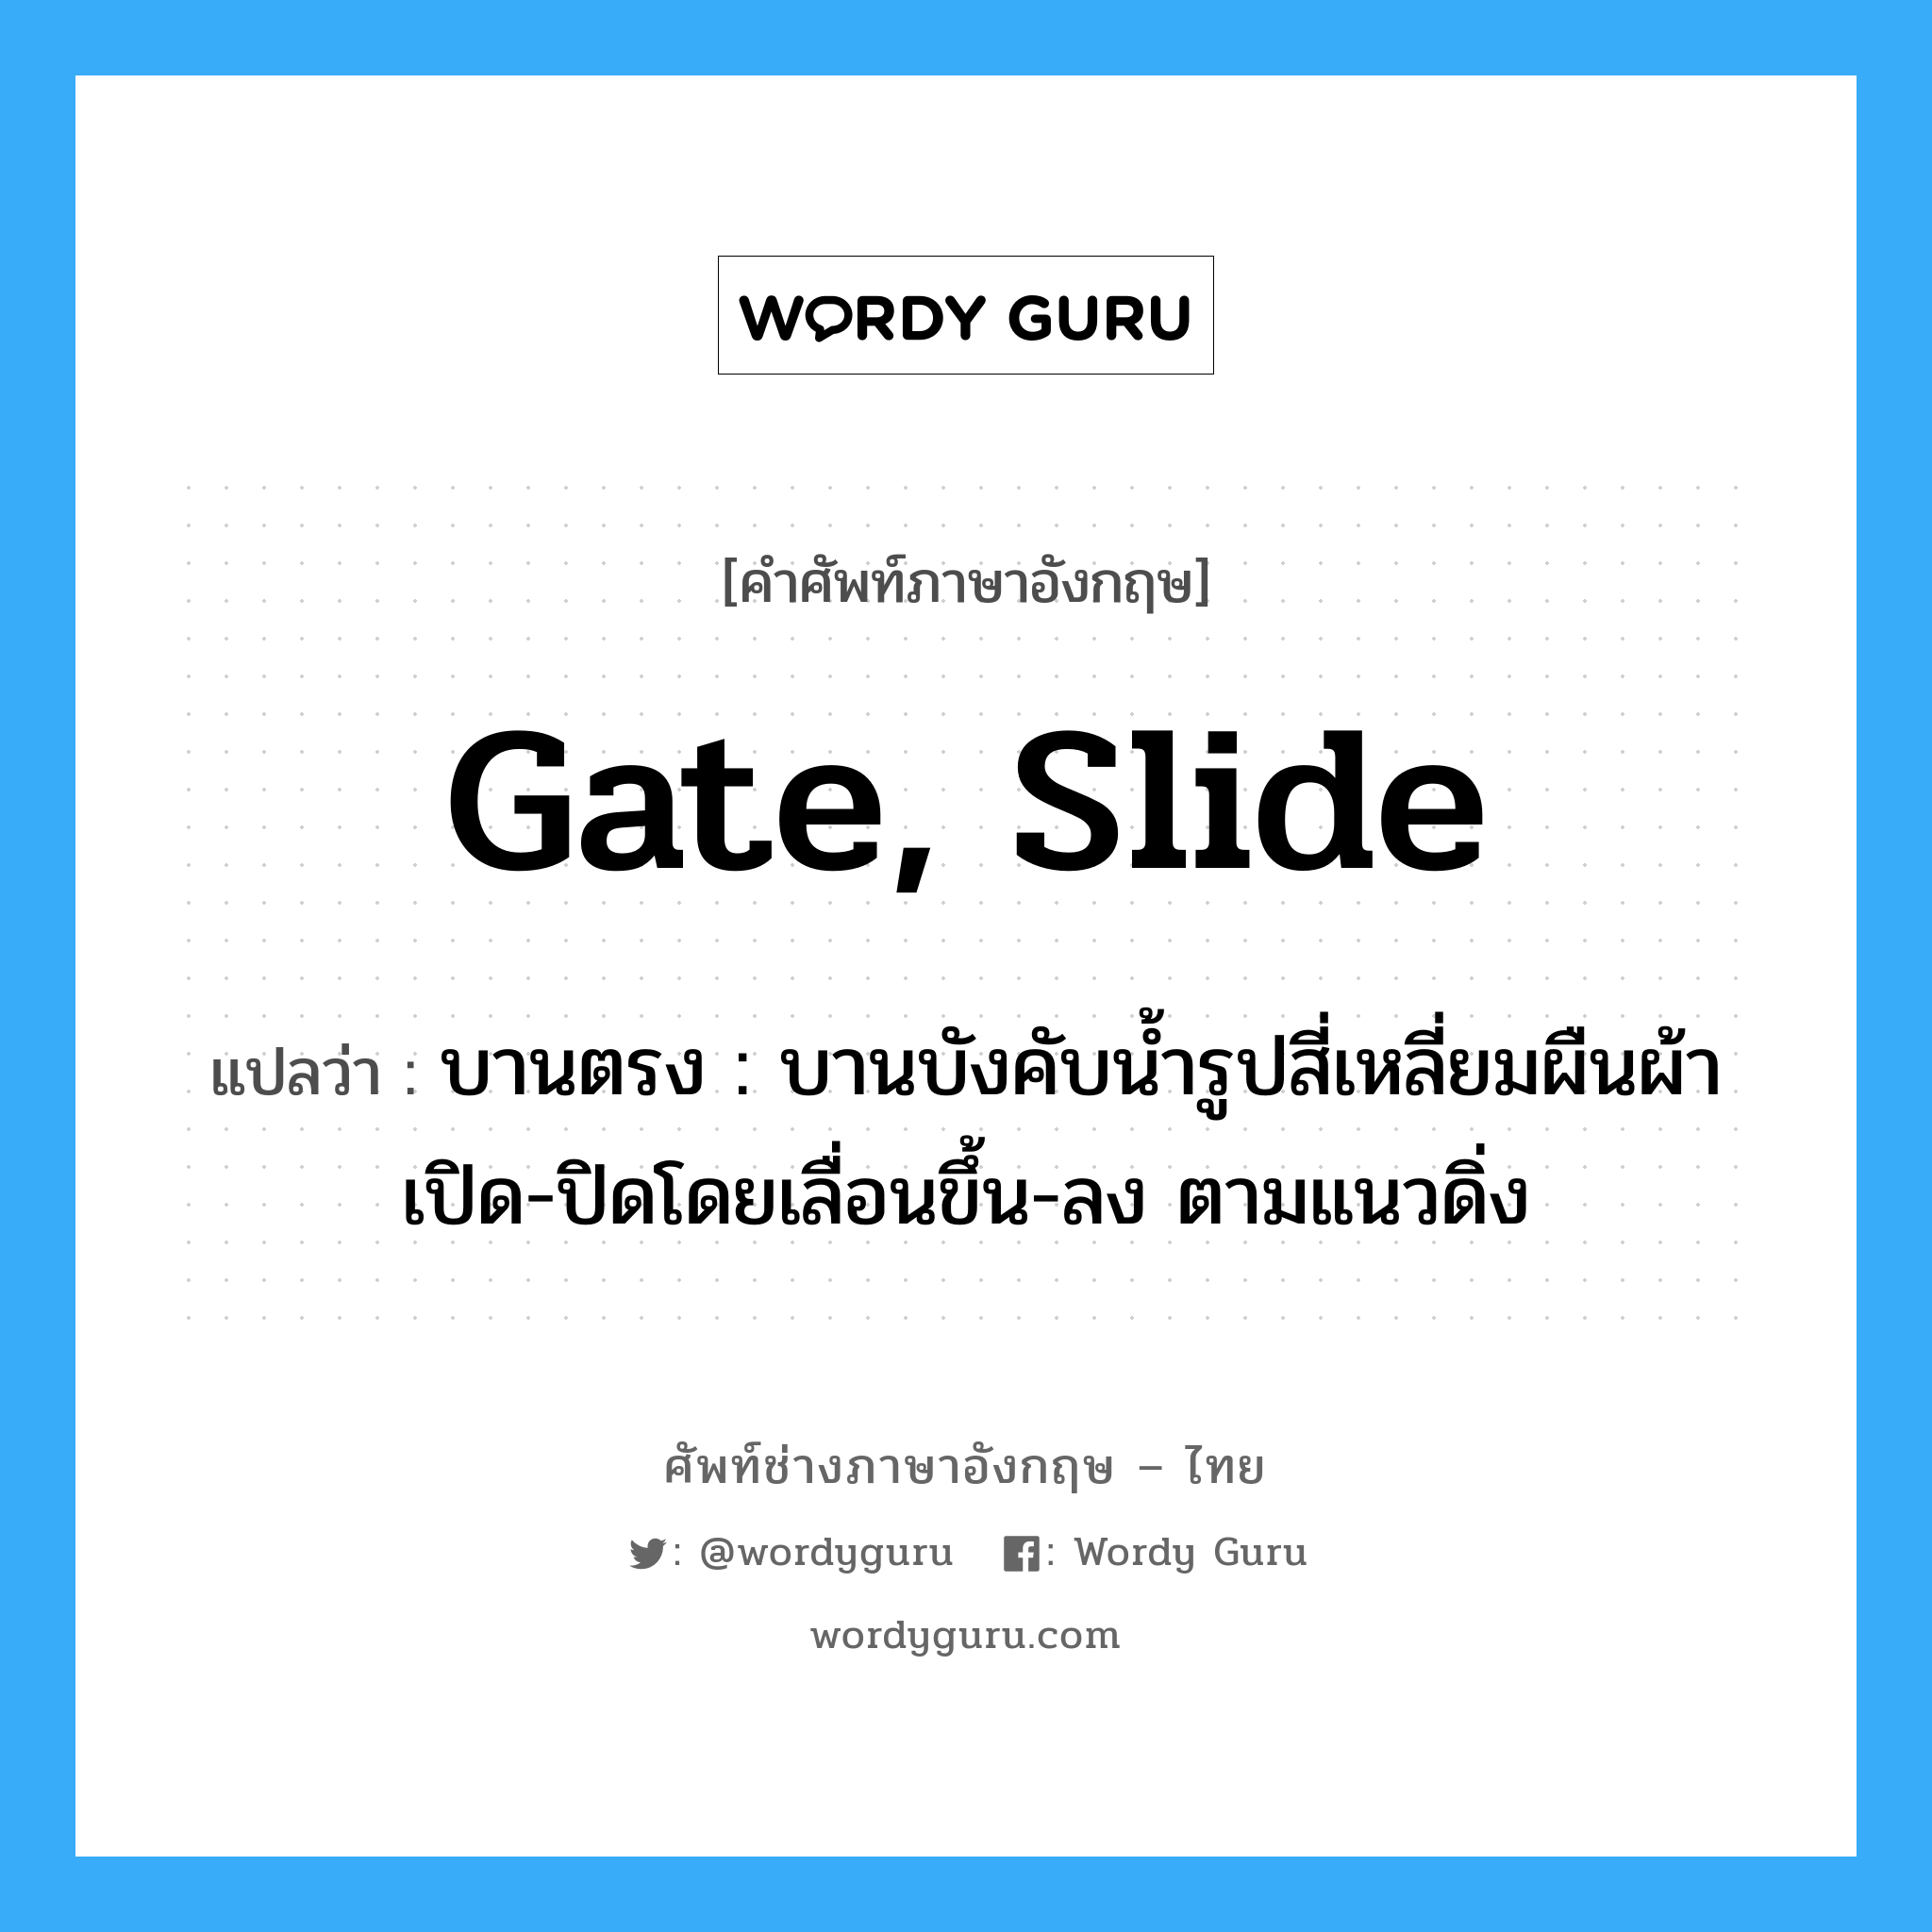 gate, slide แปลว่า?, คำศัพท์ช่างภาษาอังกฤษ - ไทย gate, slide คำศัพท์ภาษาอังกฤษ gate, slide แปลว่า บานตรง : บานบังคับน้ำรูปสี่เหลี่ยมผืนผ้า เปิด-ปิดโดยเลื่อนขึ้น-ลง ตามแนวดิ่ง